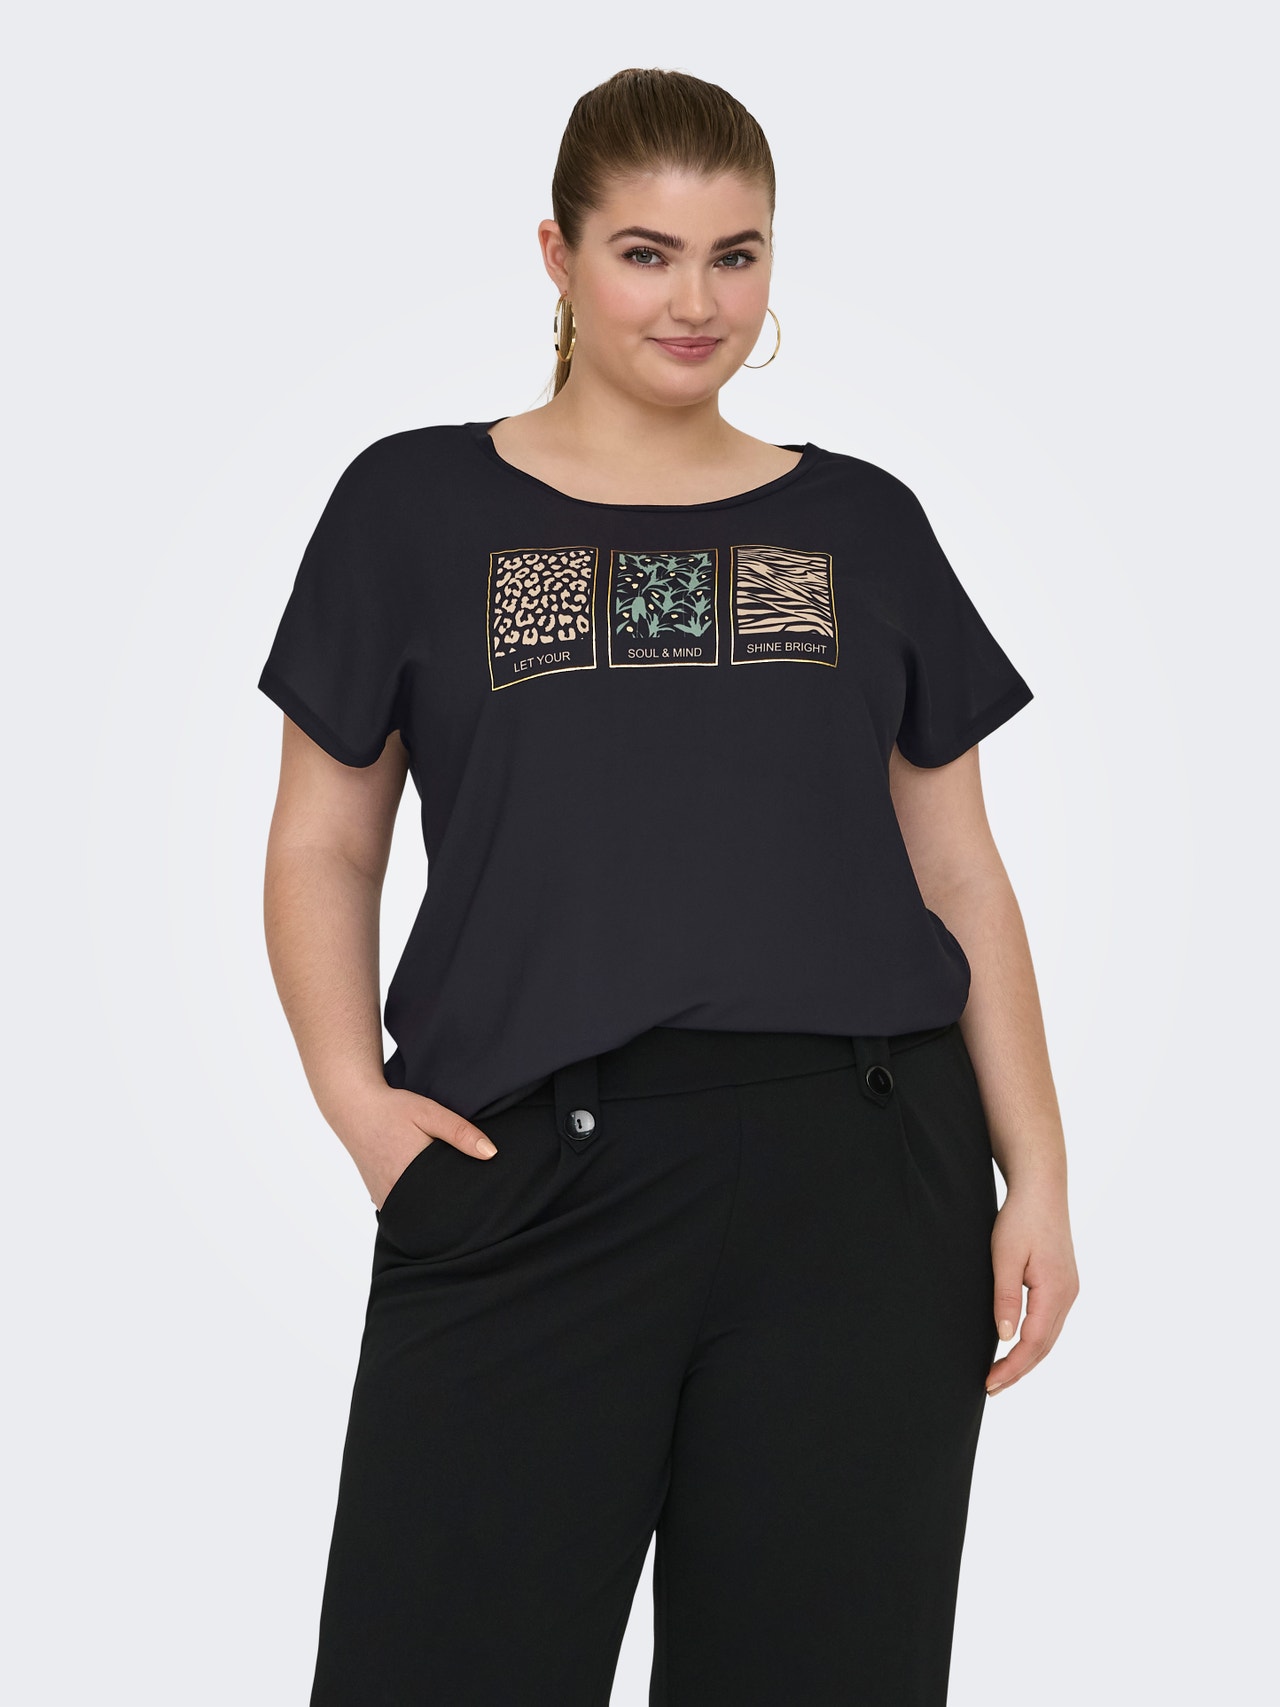 ONLY Curvy printed t-shirt -Black - 15319623